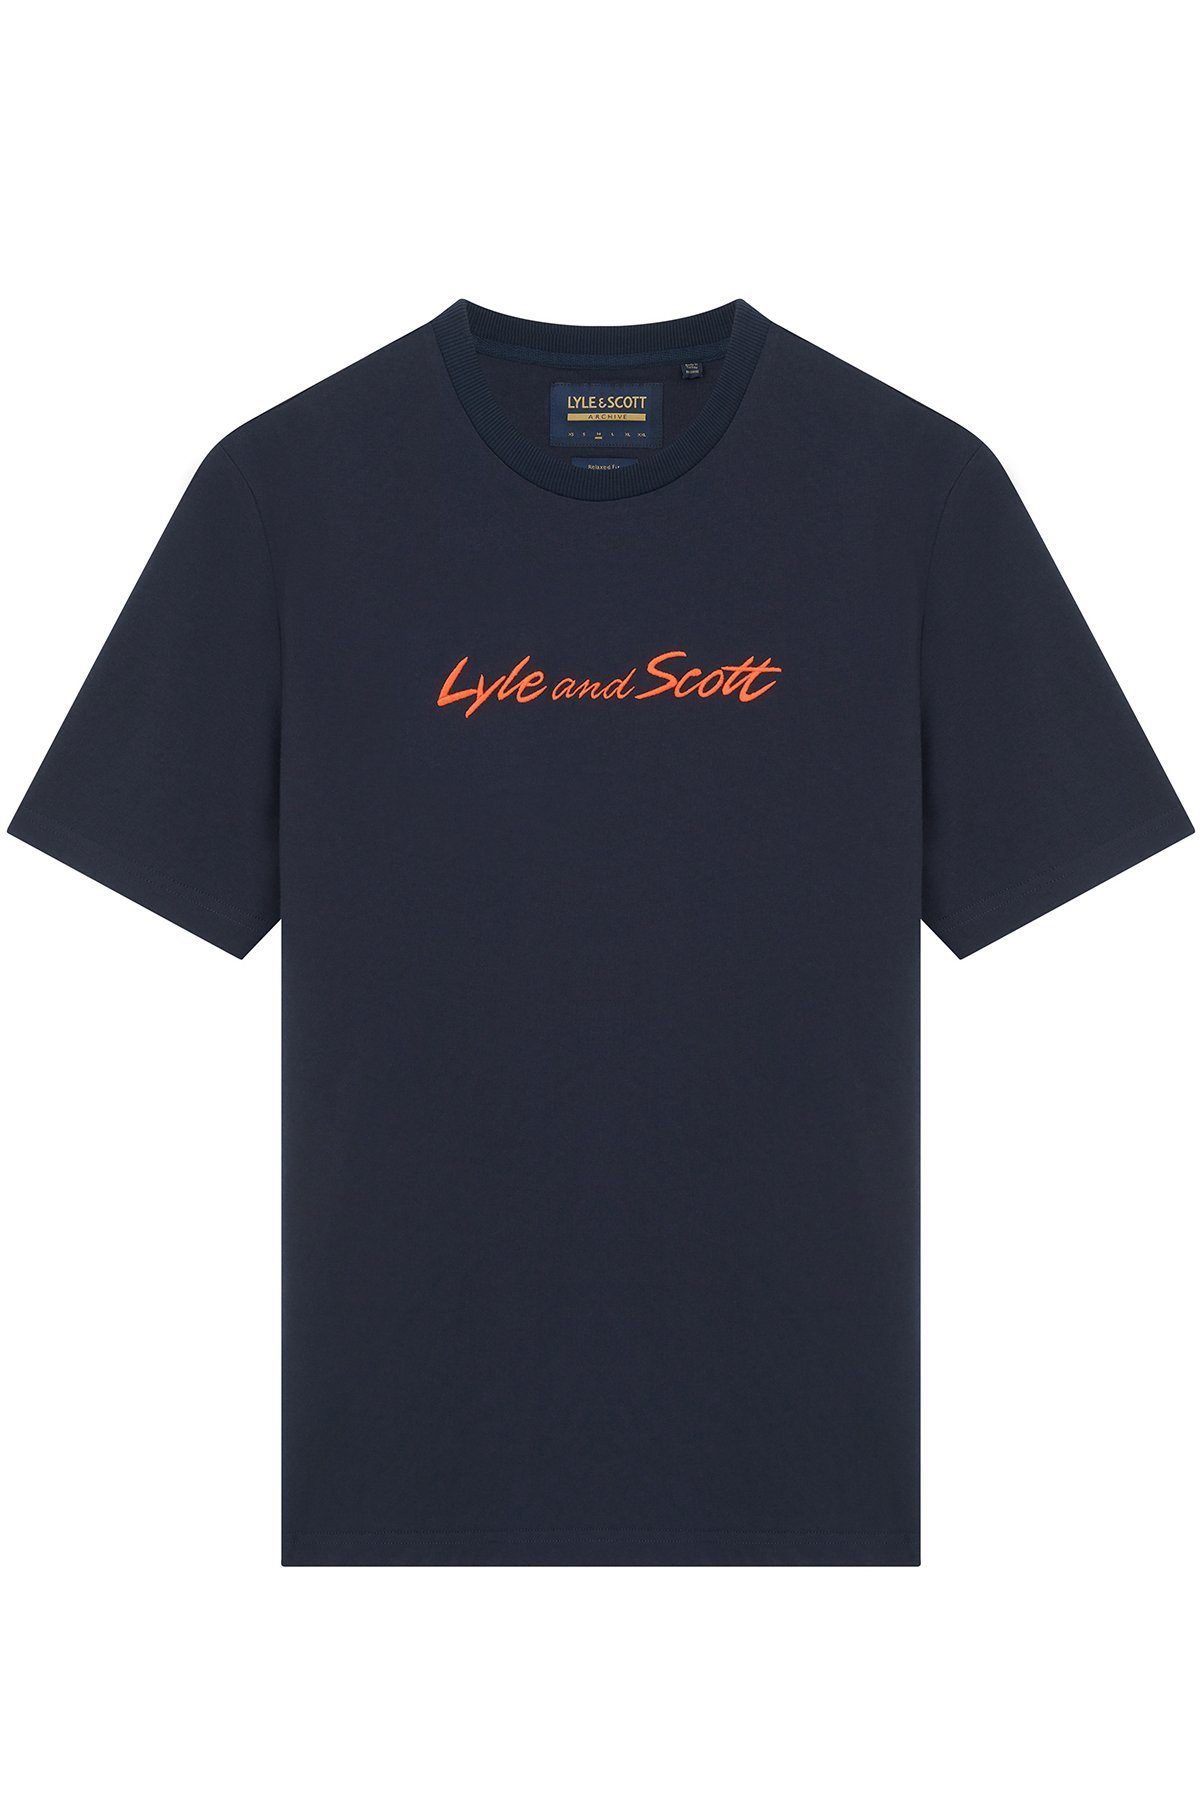 Brustprint Orange Scott Mit Dunkelmarine/Sorrel & T-Shirt Lyle